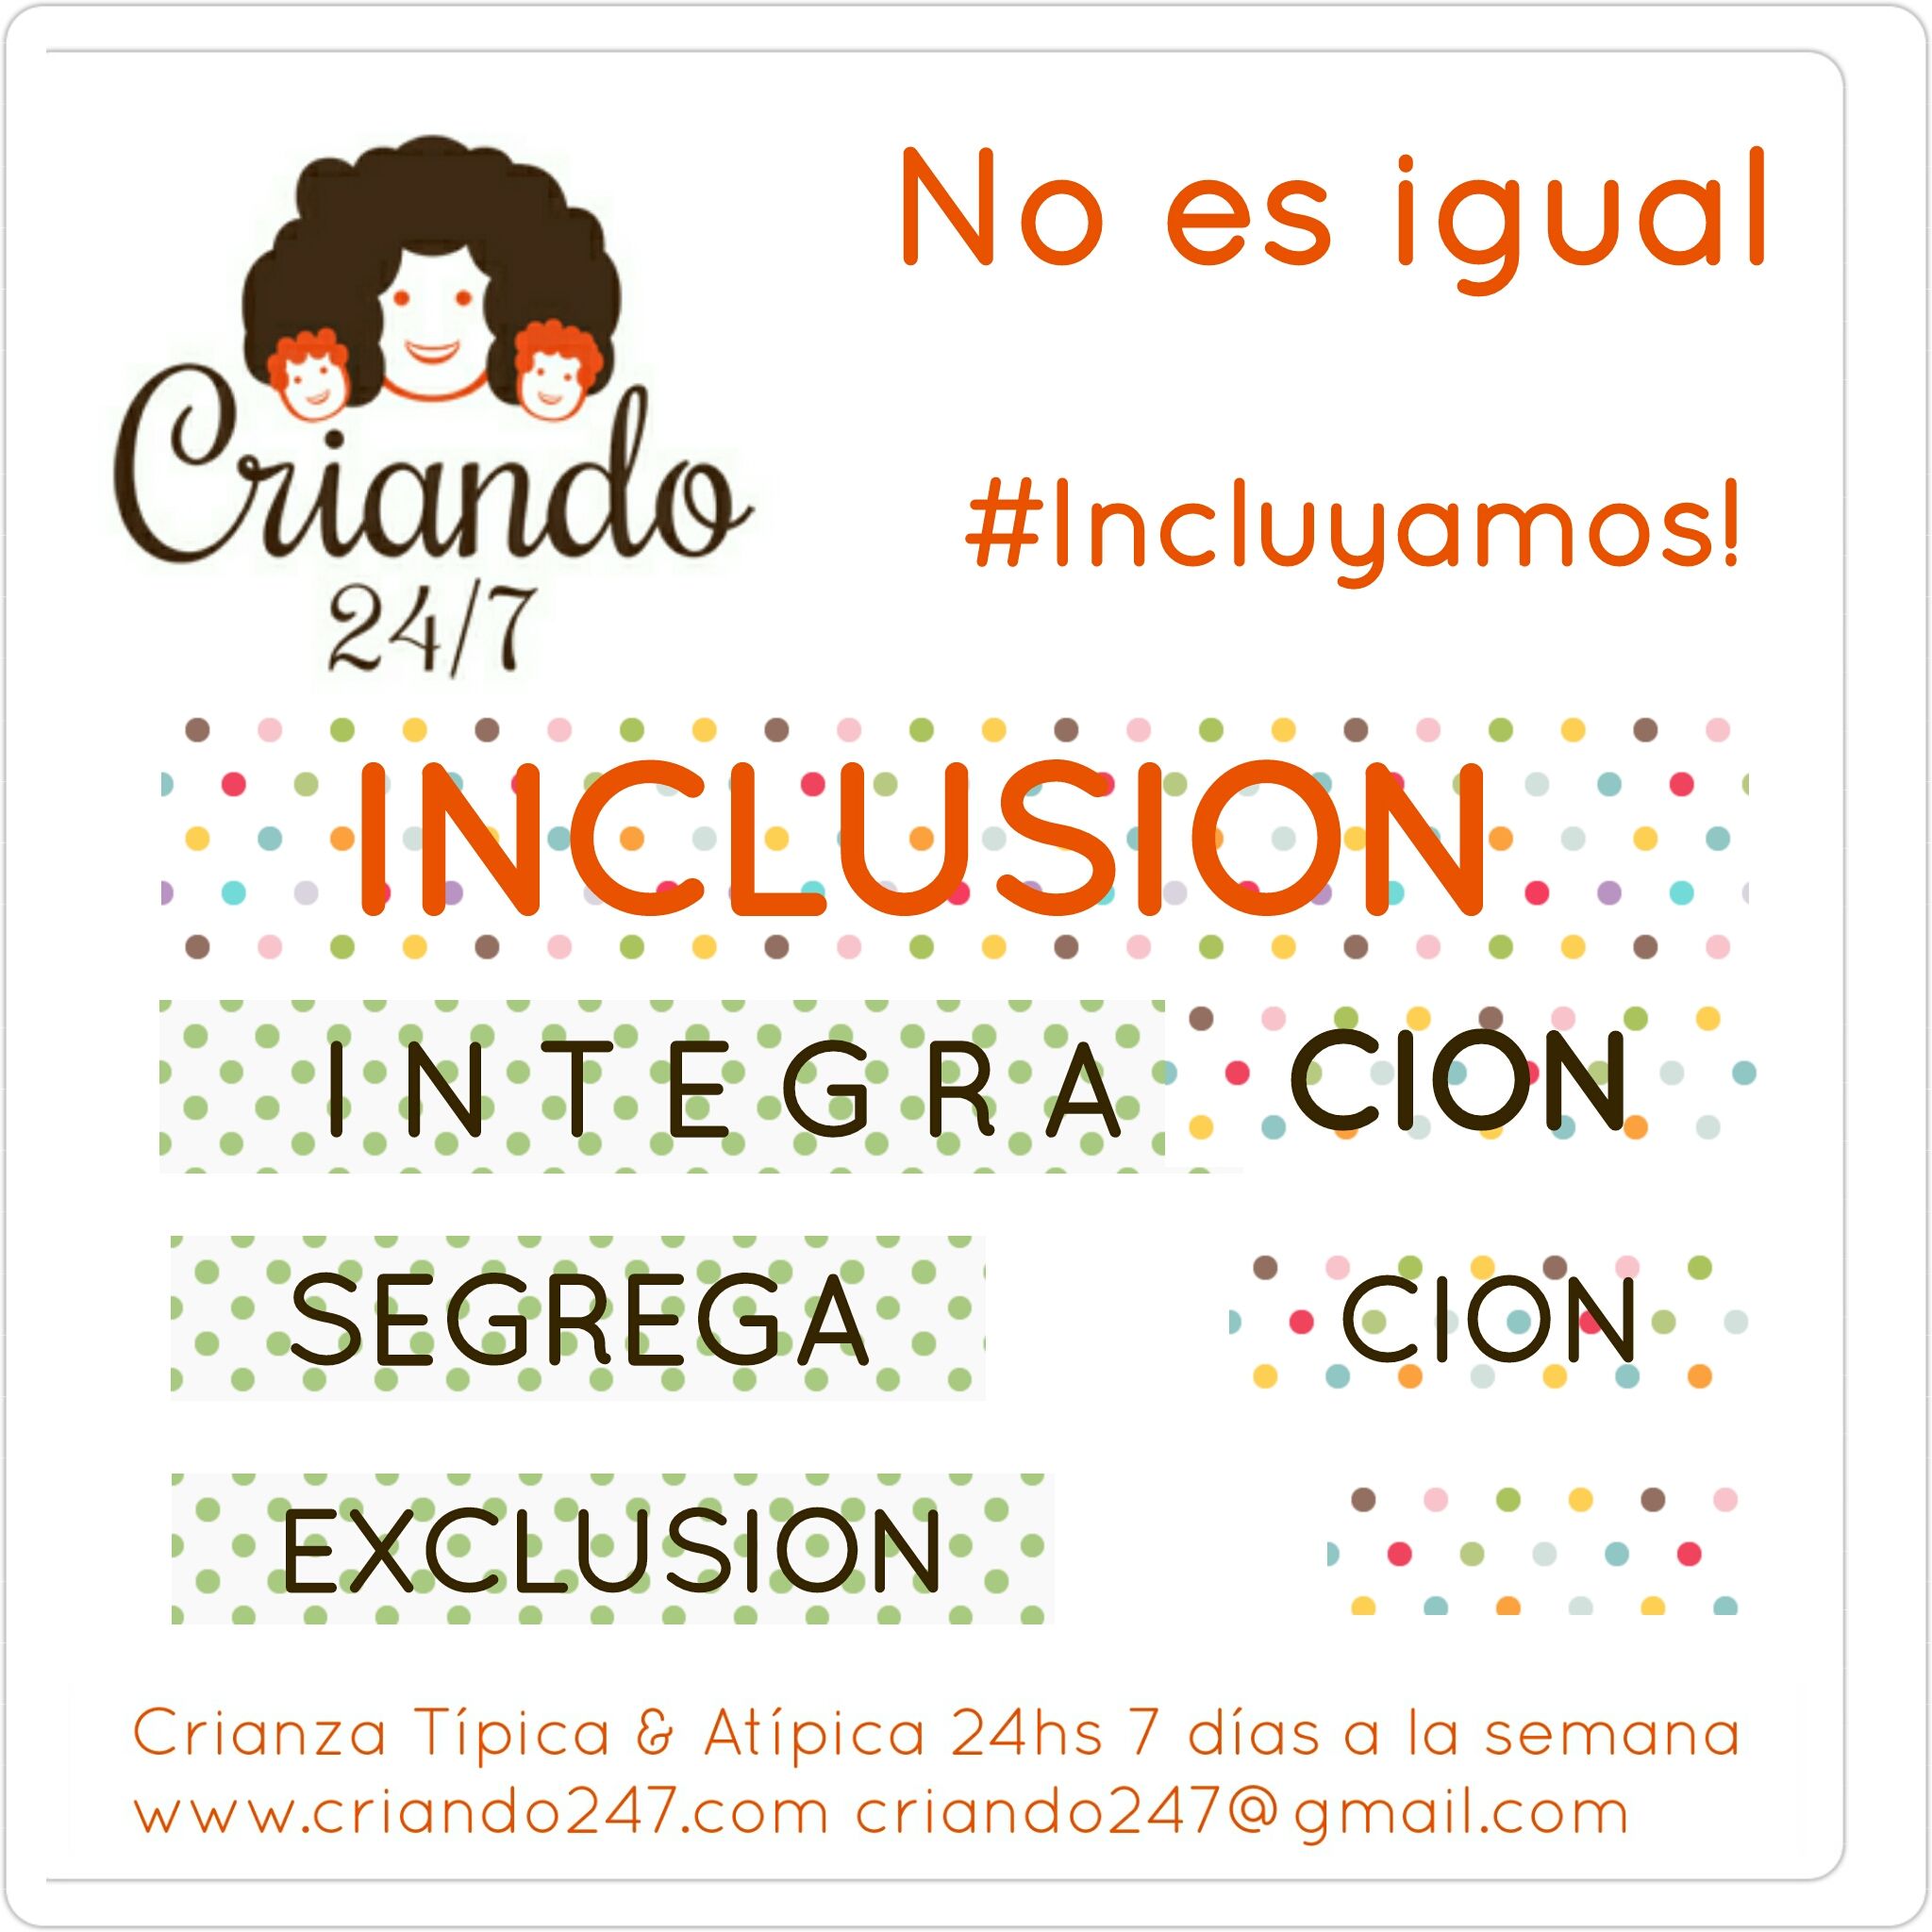 criando247 inclusion segregacion integracion exclusion.jpg